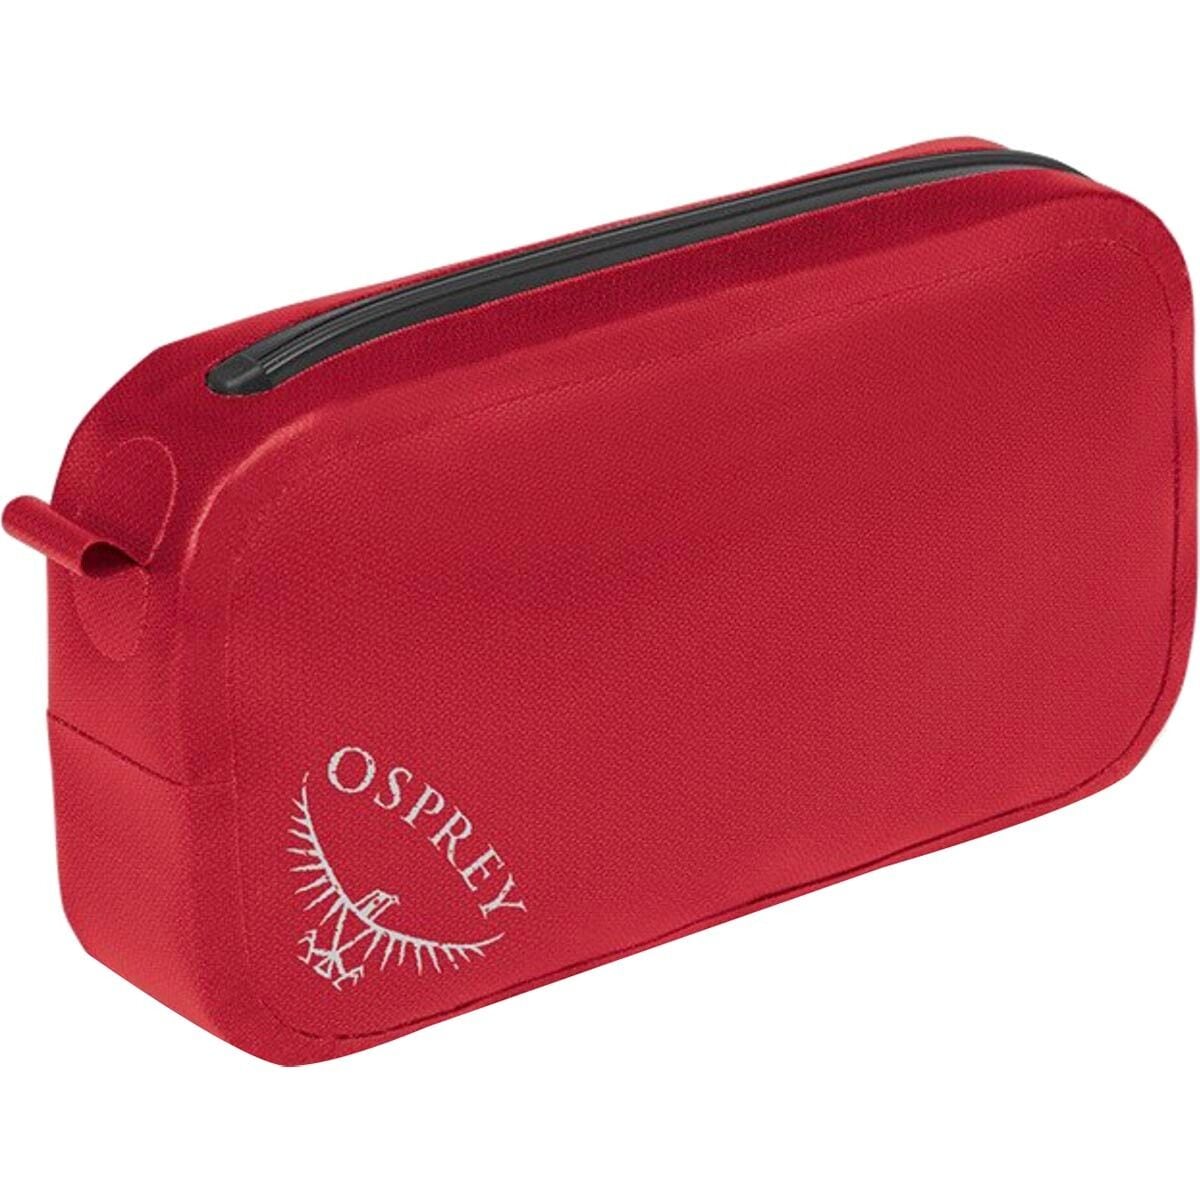 Osprey Packs Pack Pocket Waterproof